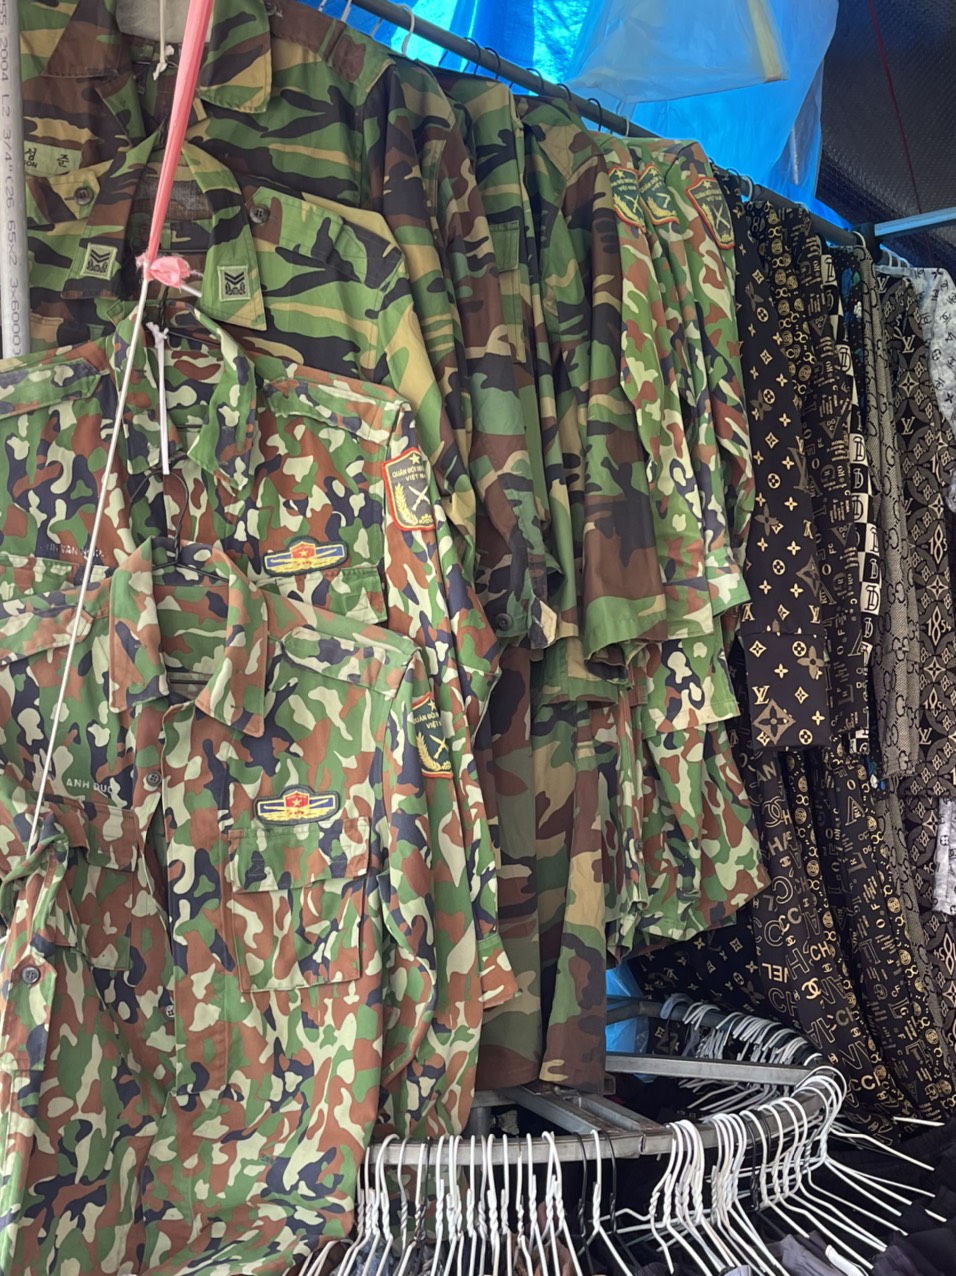 Phát hiện hơn 1.000 bộ quần áo rằn ri nhập lậu ở Kon Tum - Ảnh 4.